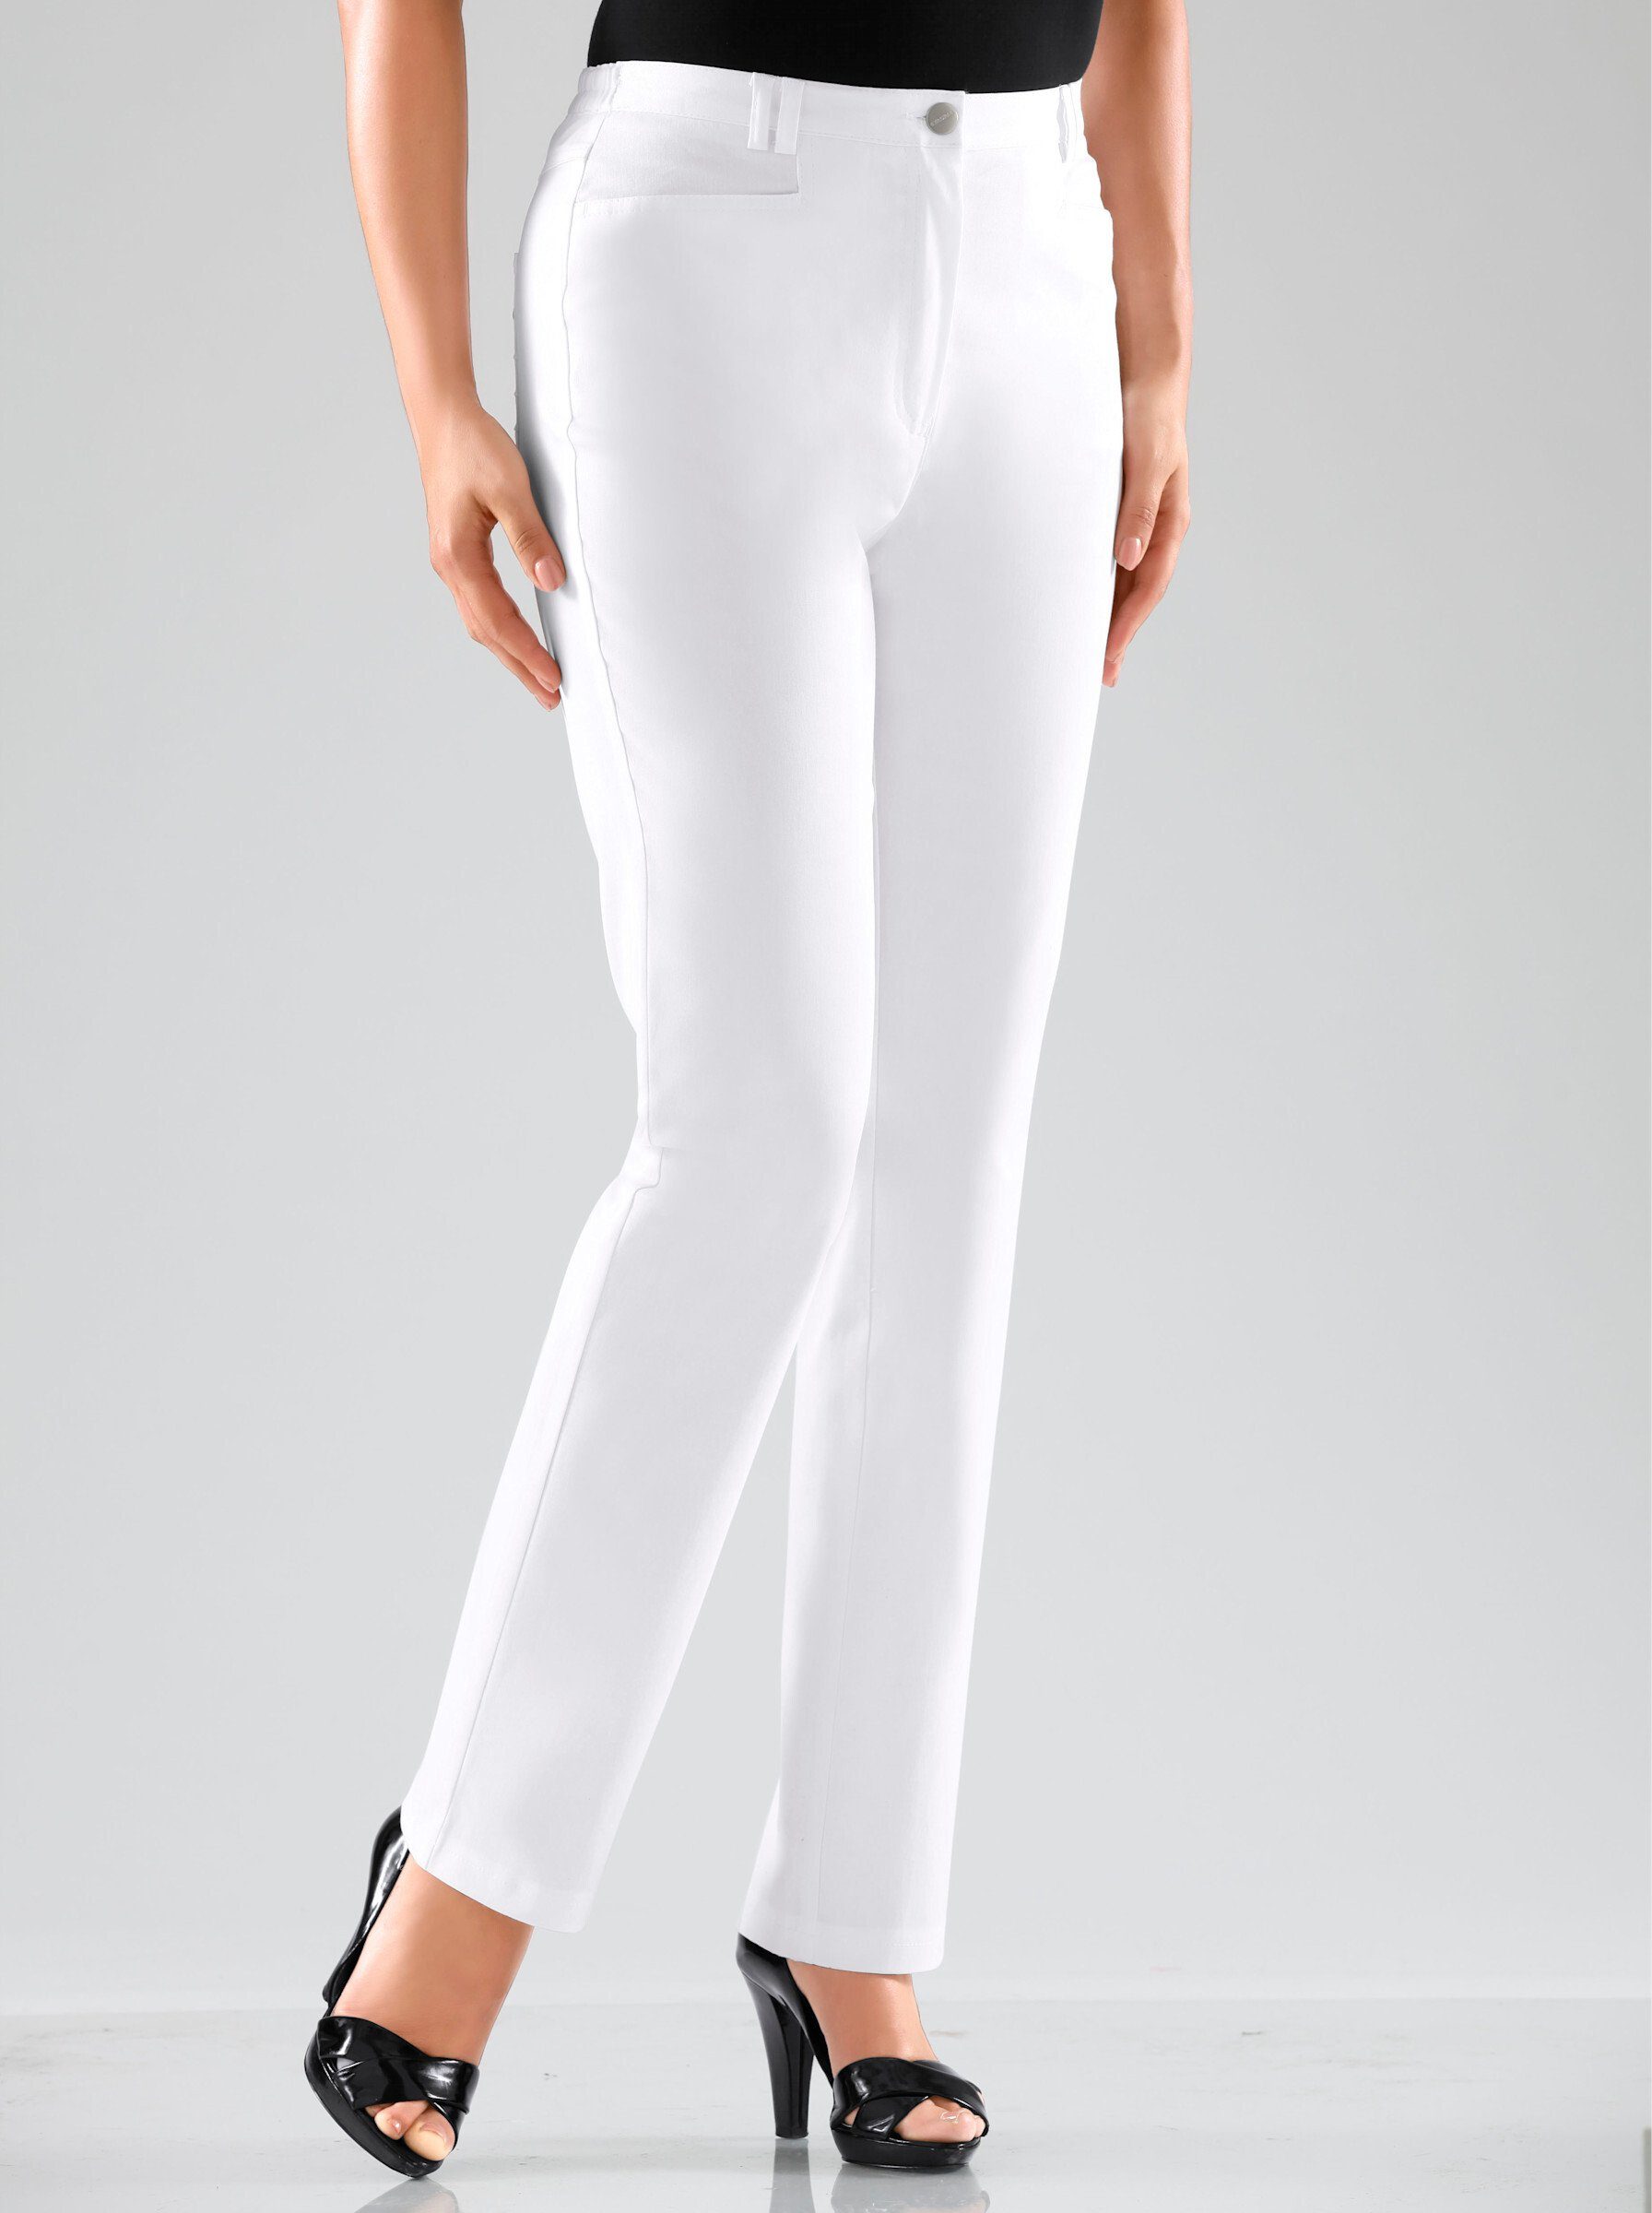 Weiße Jerseyhosen für Damen online kaufen | OTTO